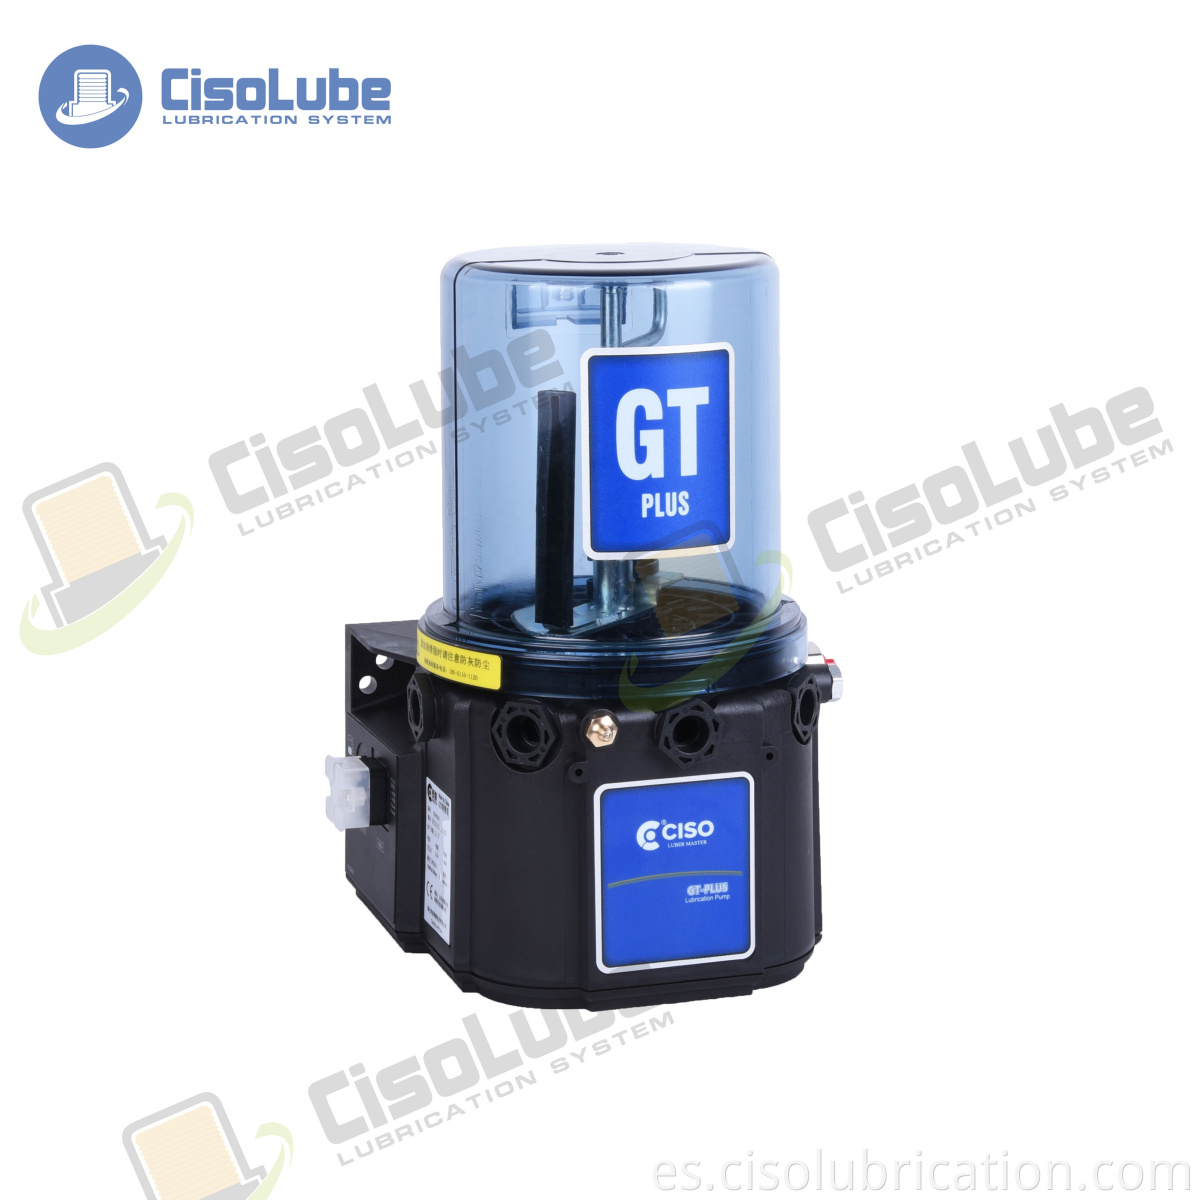 CISO Factory vende Bomba eléctrica de lubricación automática de tipo GT-plus de china